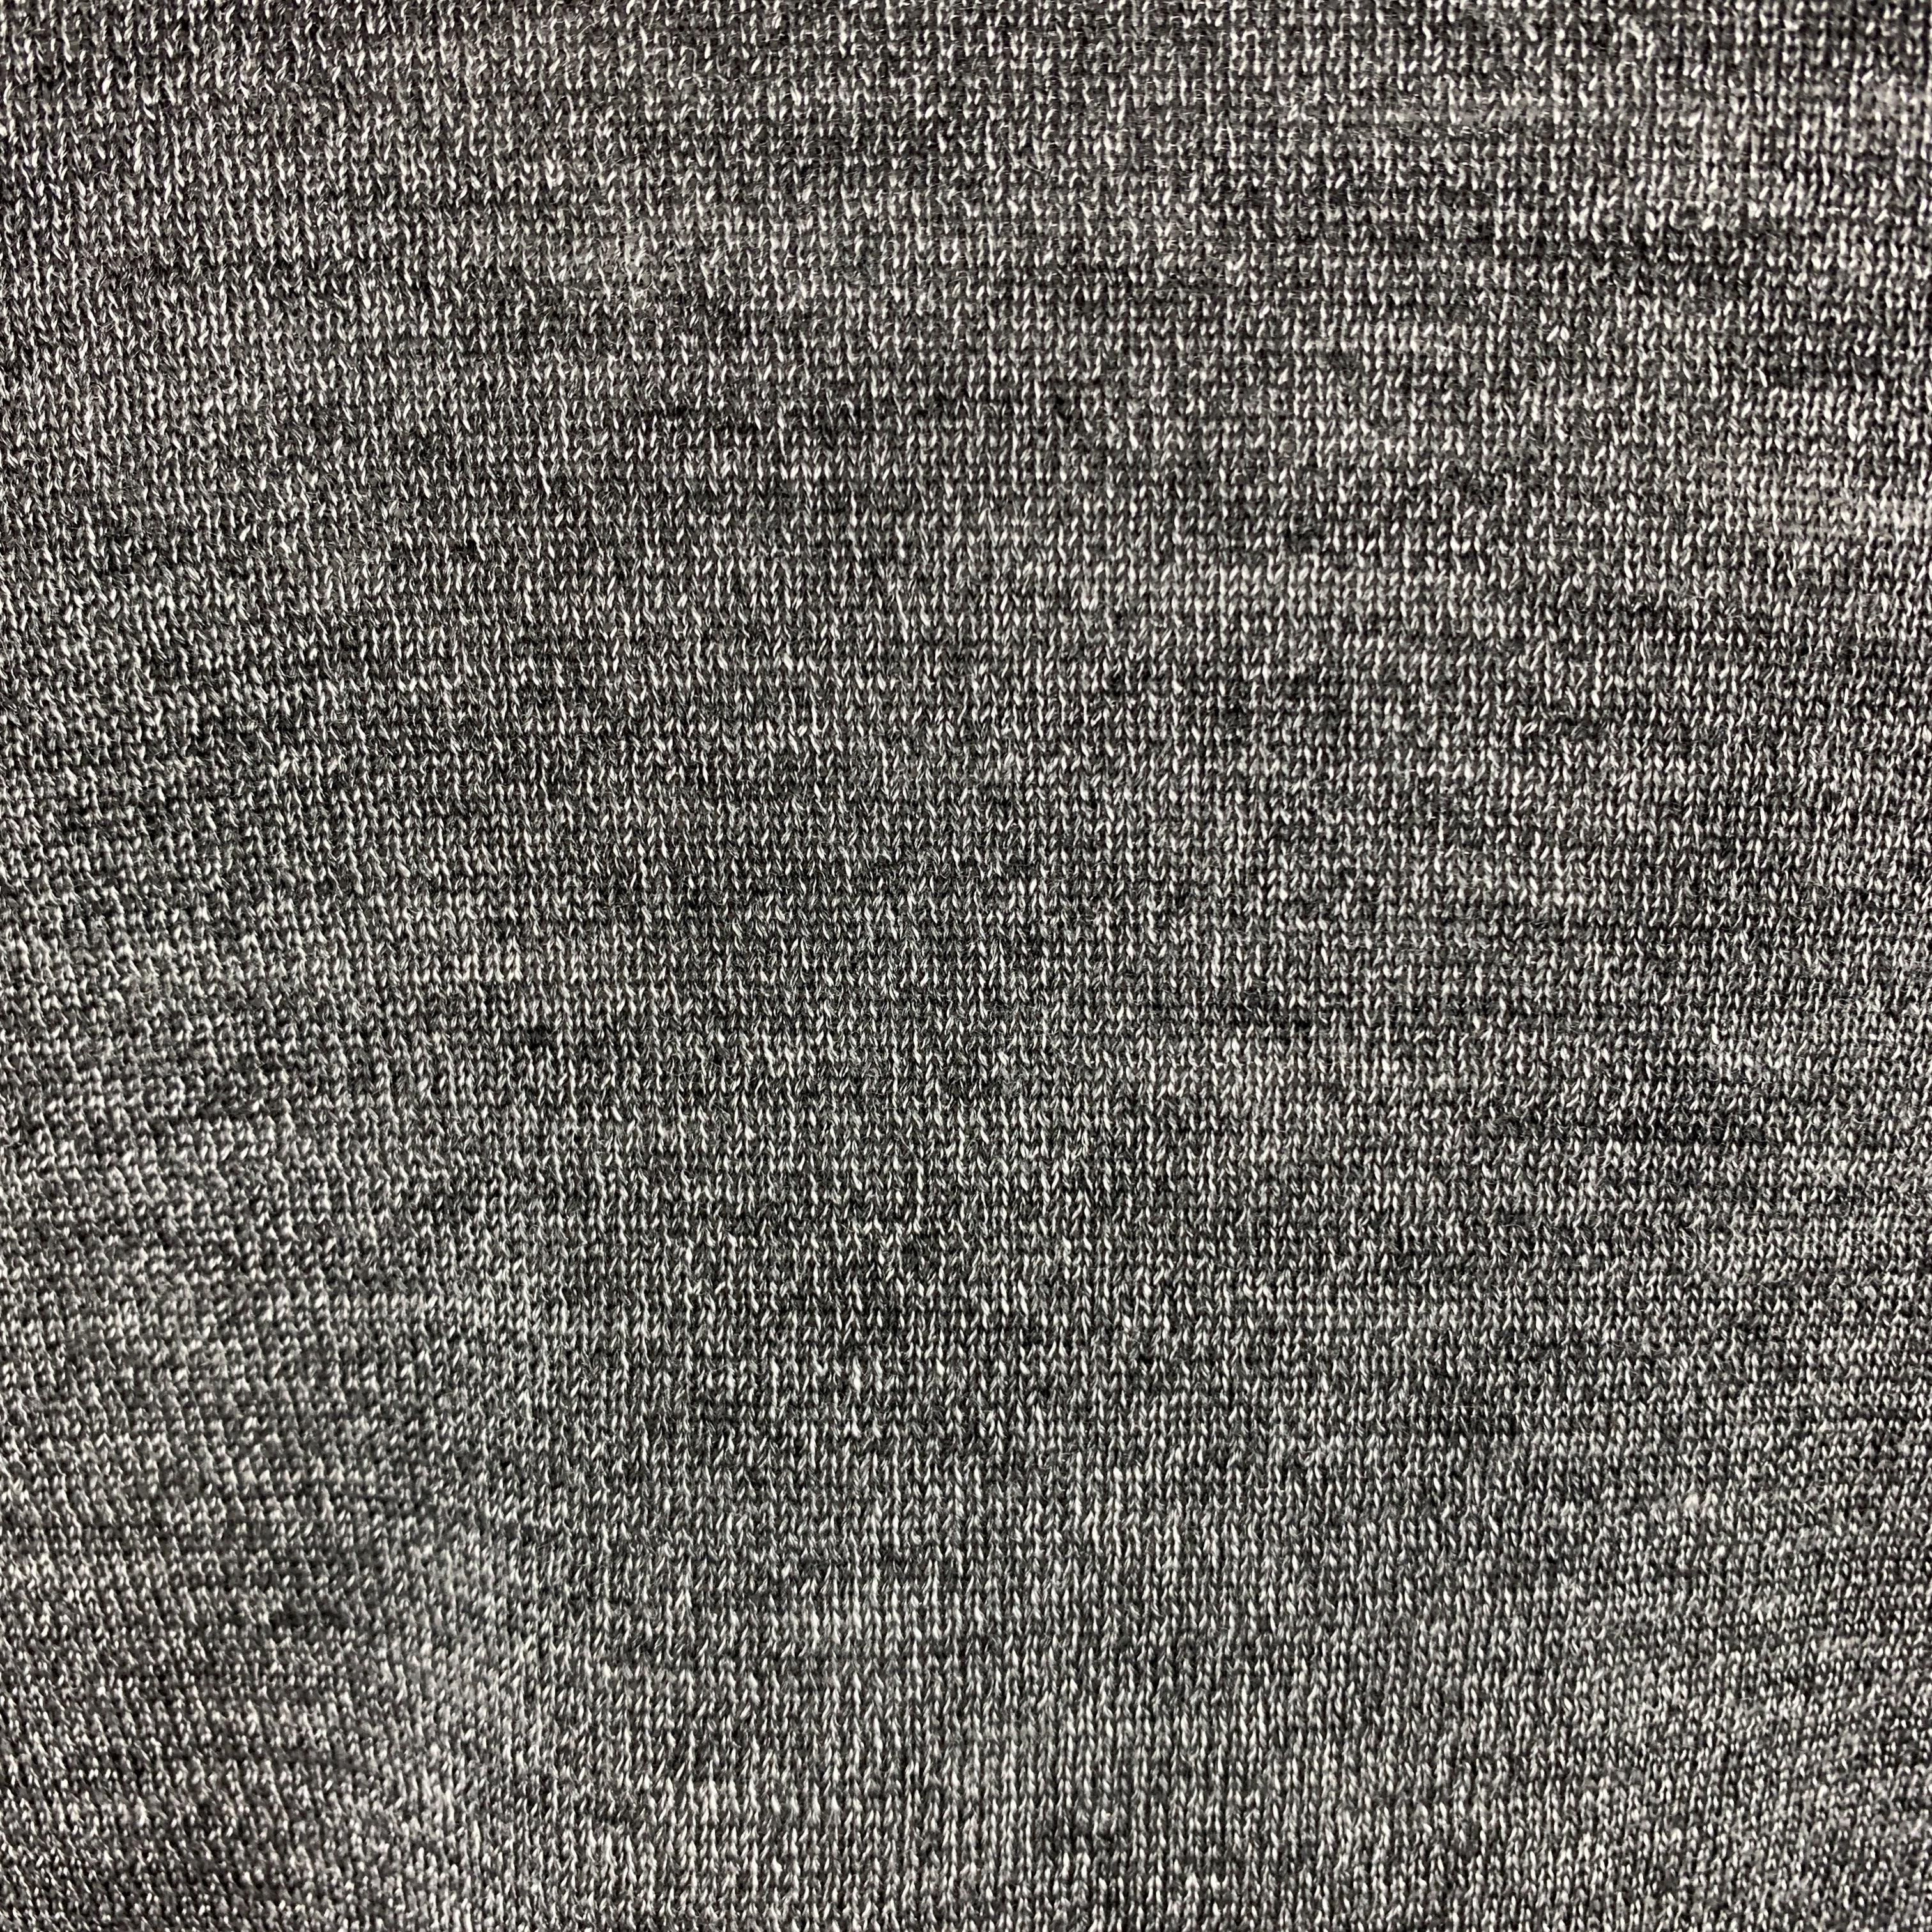 JOHN VARVATOS Size S Ribbed Gray Wool Blend Burnout Stripe Turtleneck Sweater 1